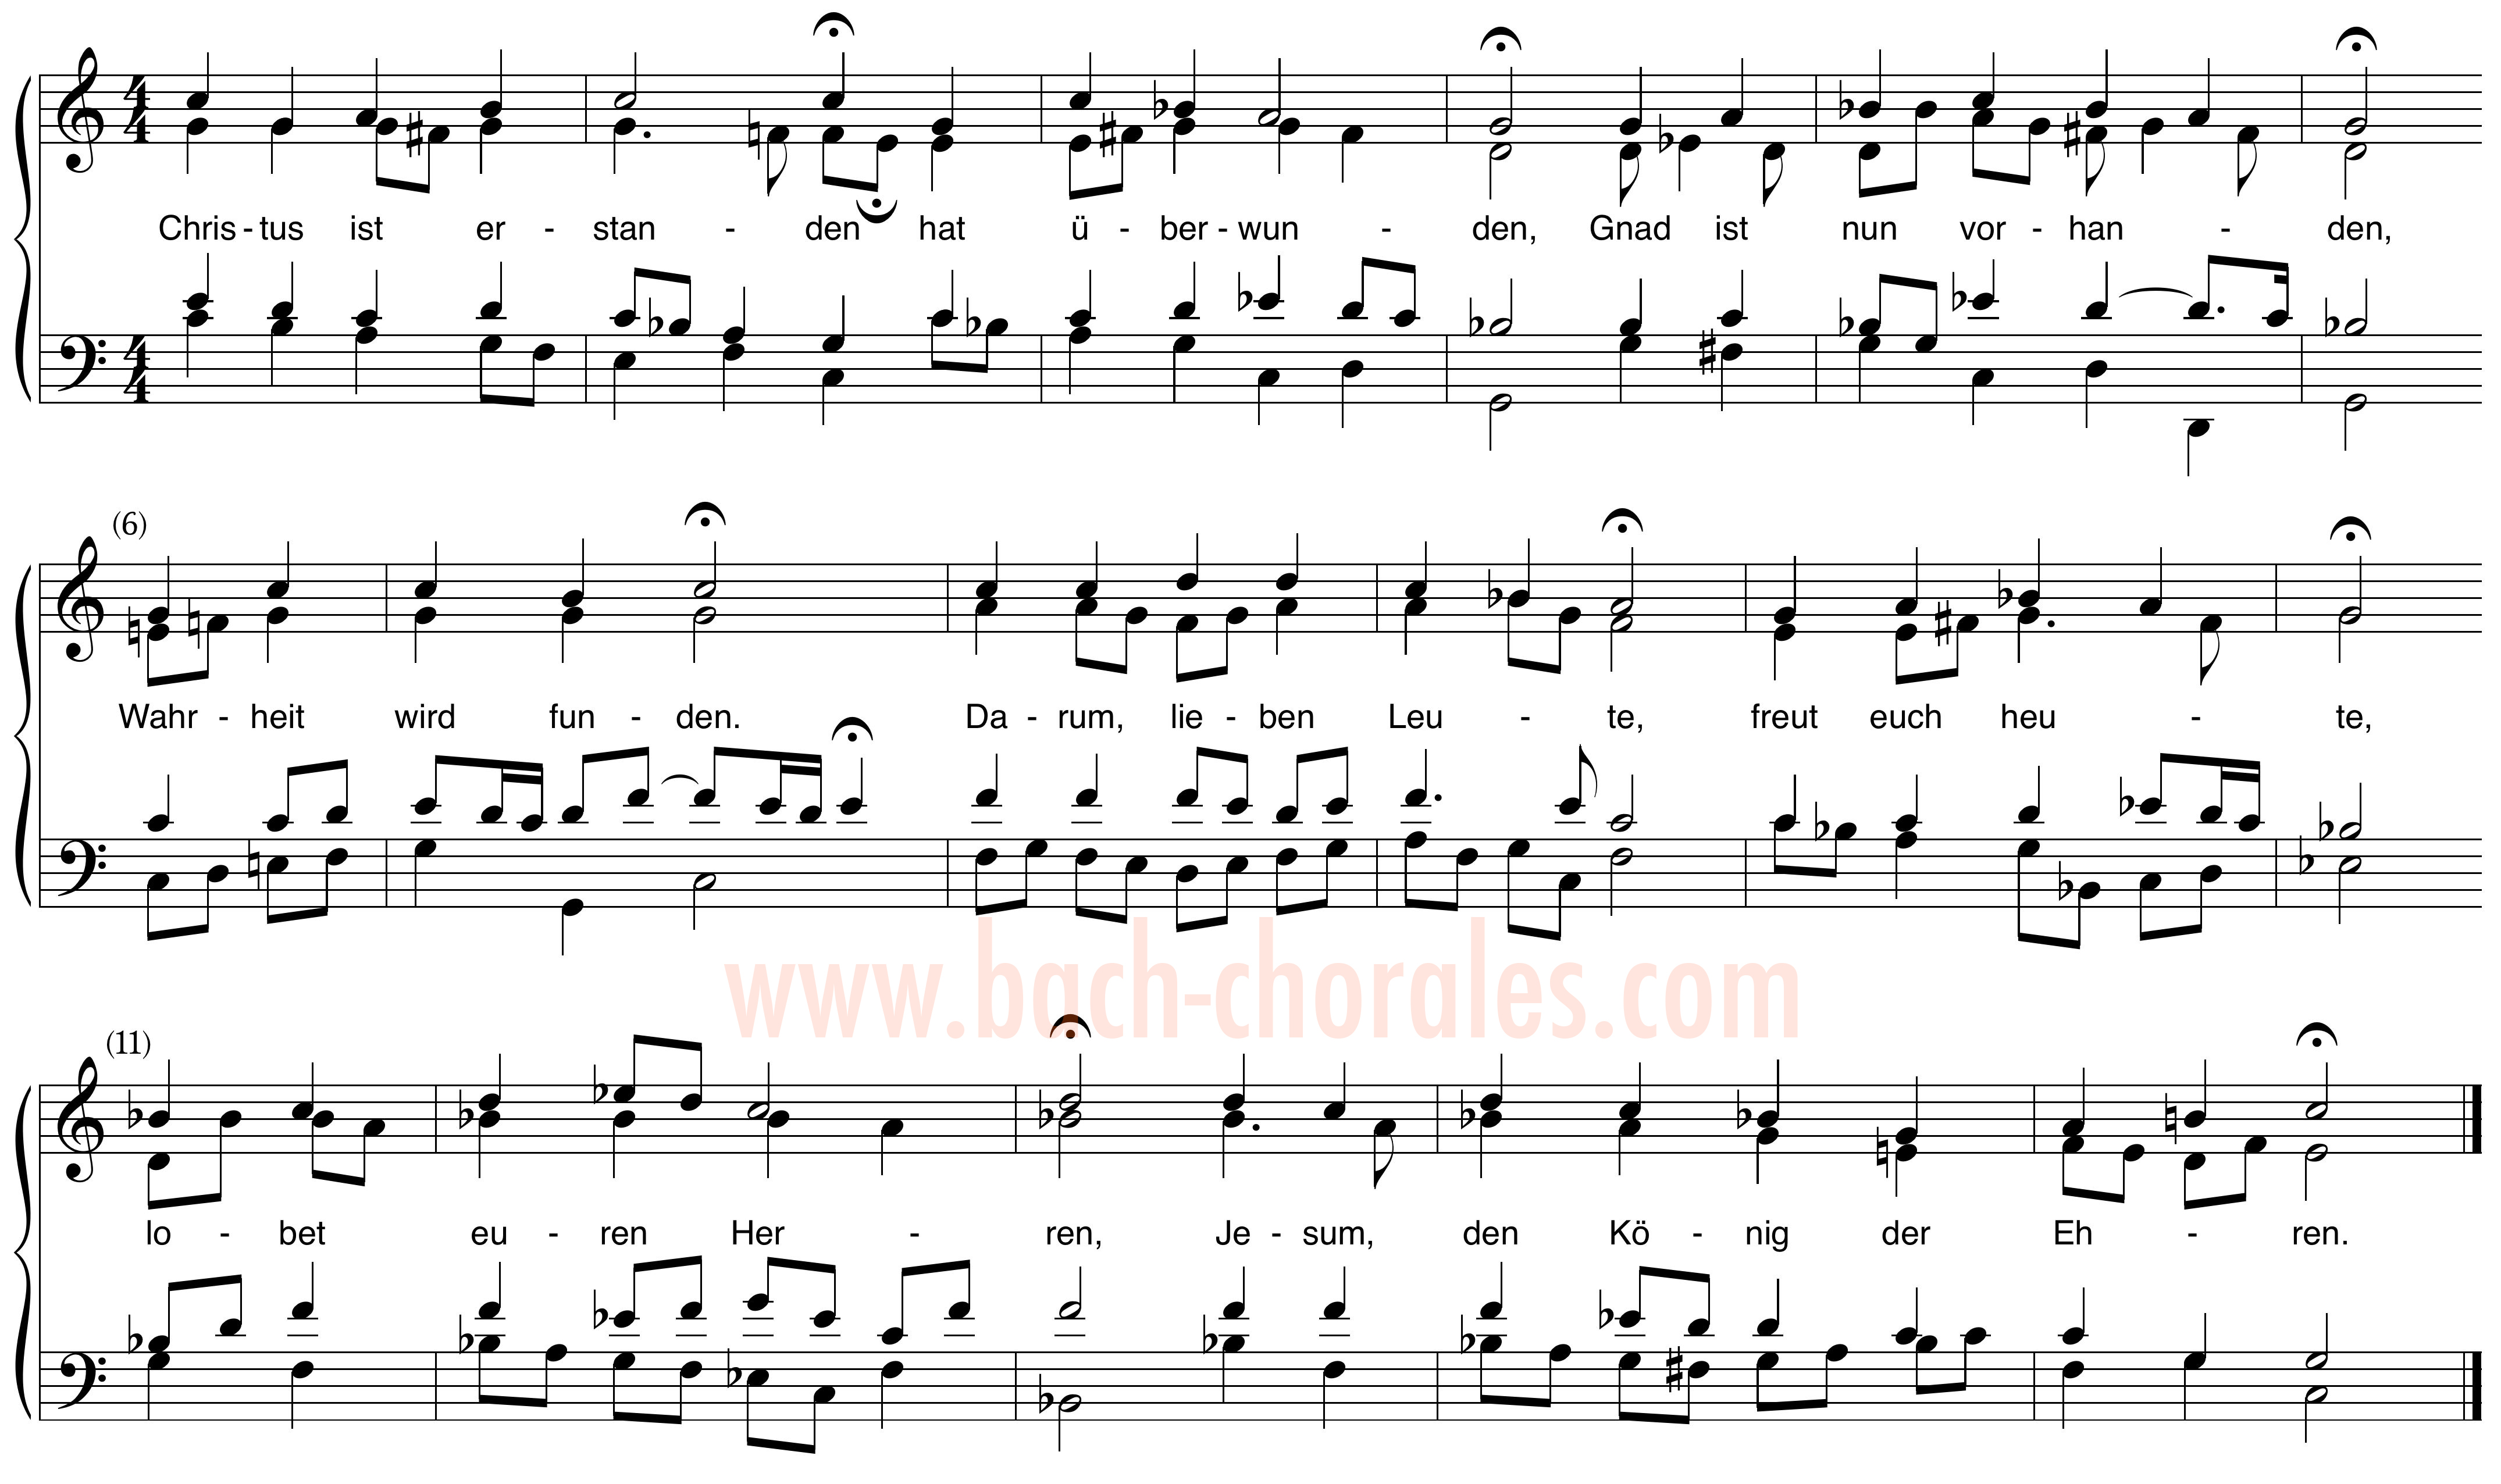 notenbeeld BWV 284 op https://www.bach-chorales.com/